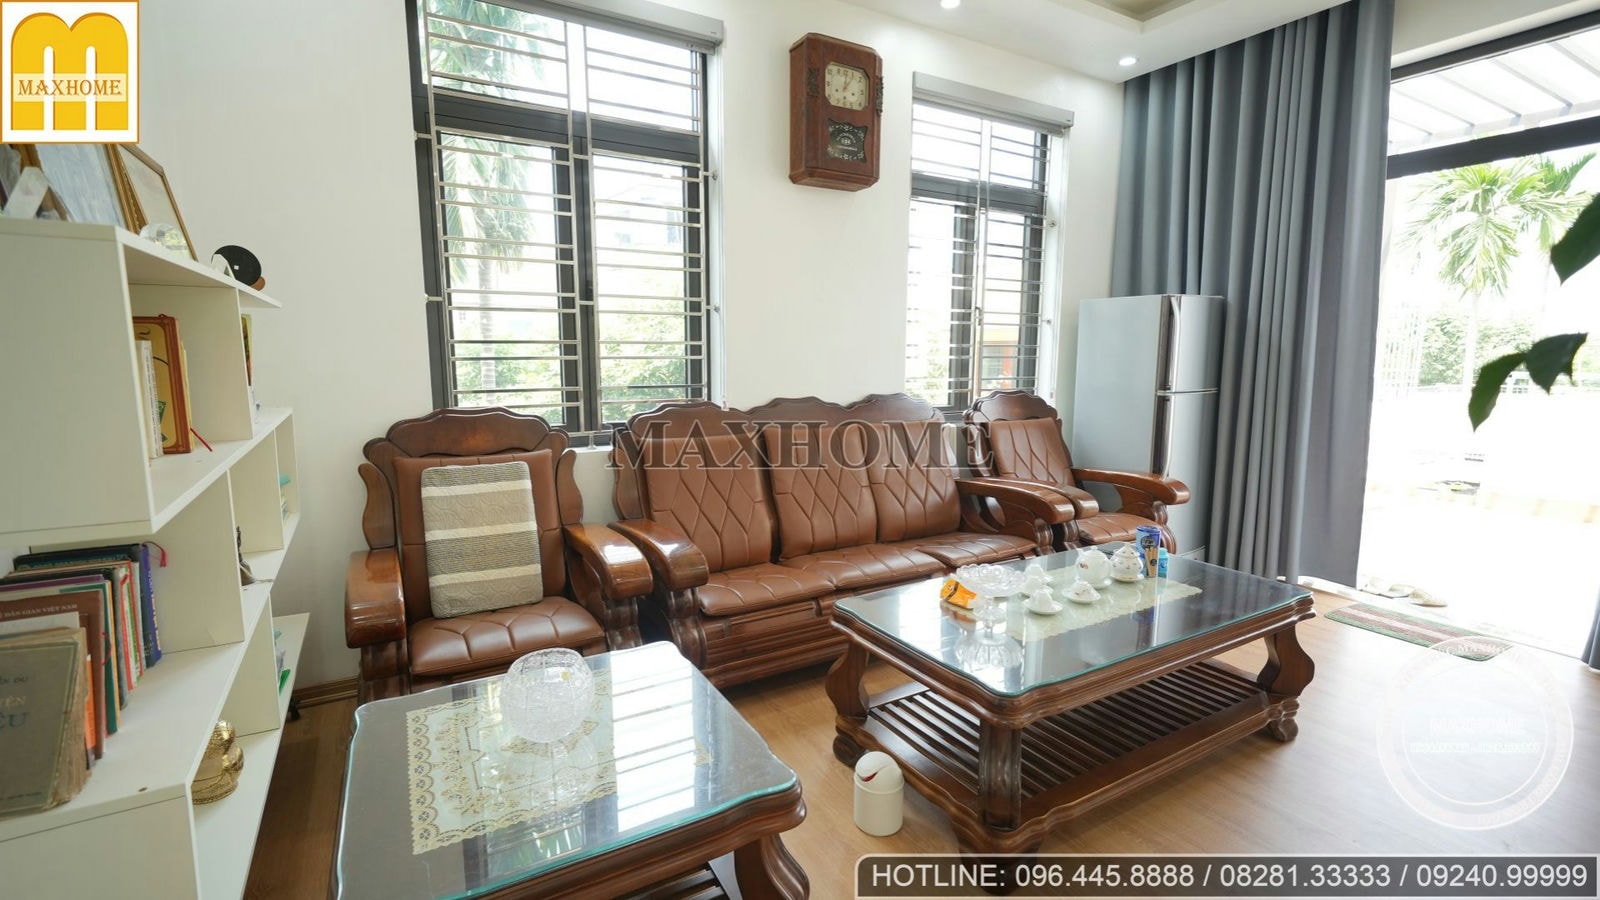 Thực tế trọn bộ nội thất hiện đại cho căn biệt thự mái bằng tại Thái Bình